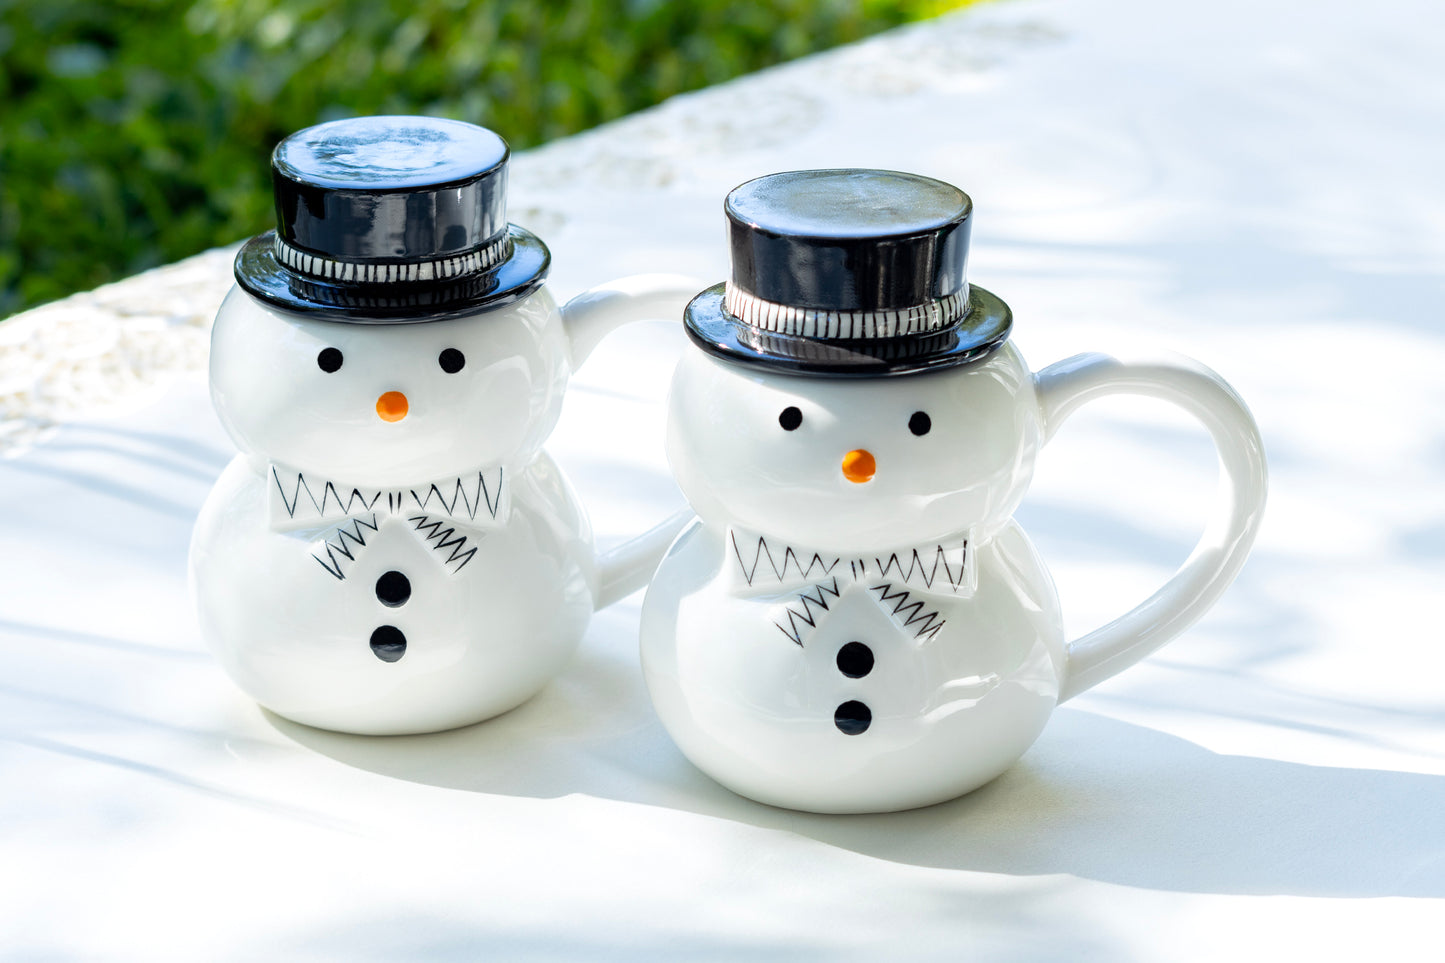 Potter's Studio Snowman Coffee Mug with Lid Holiday Christmas Snowman mugs